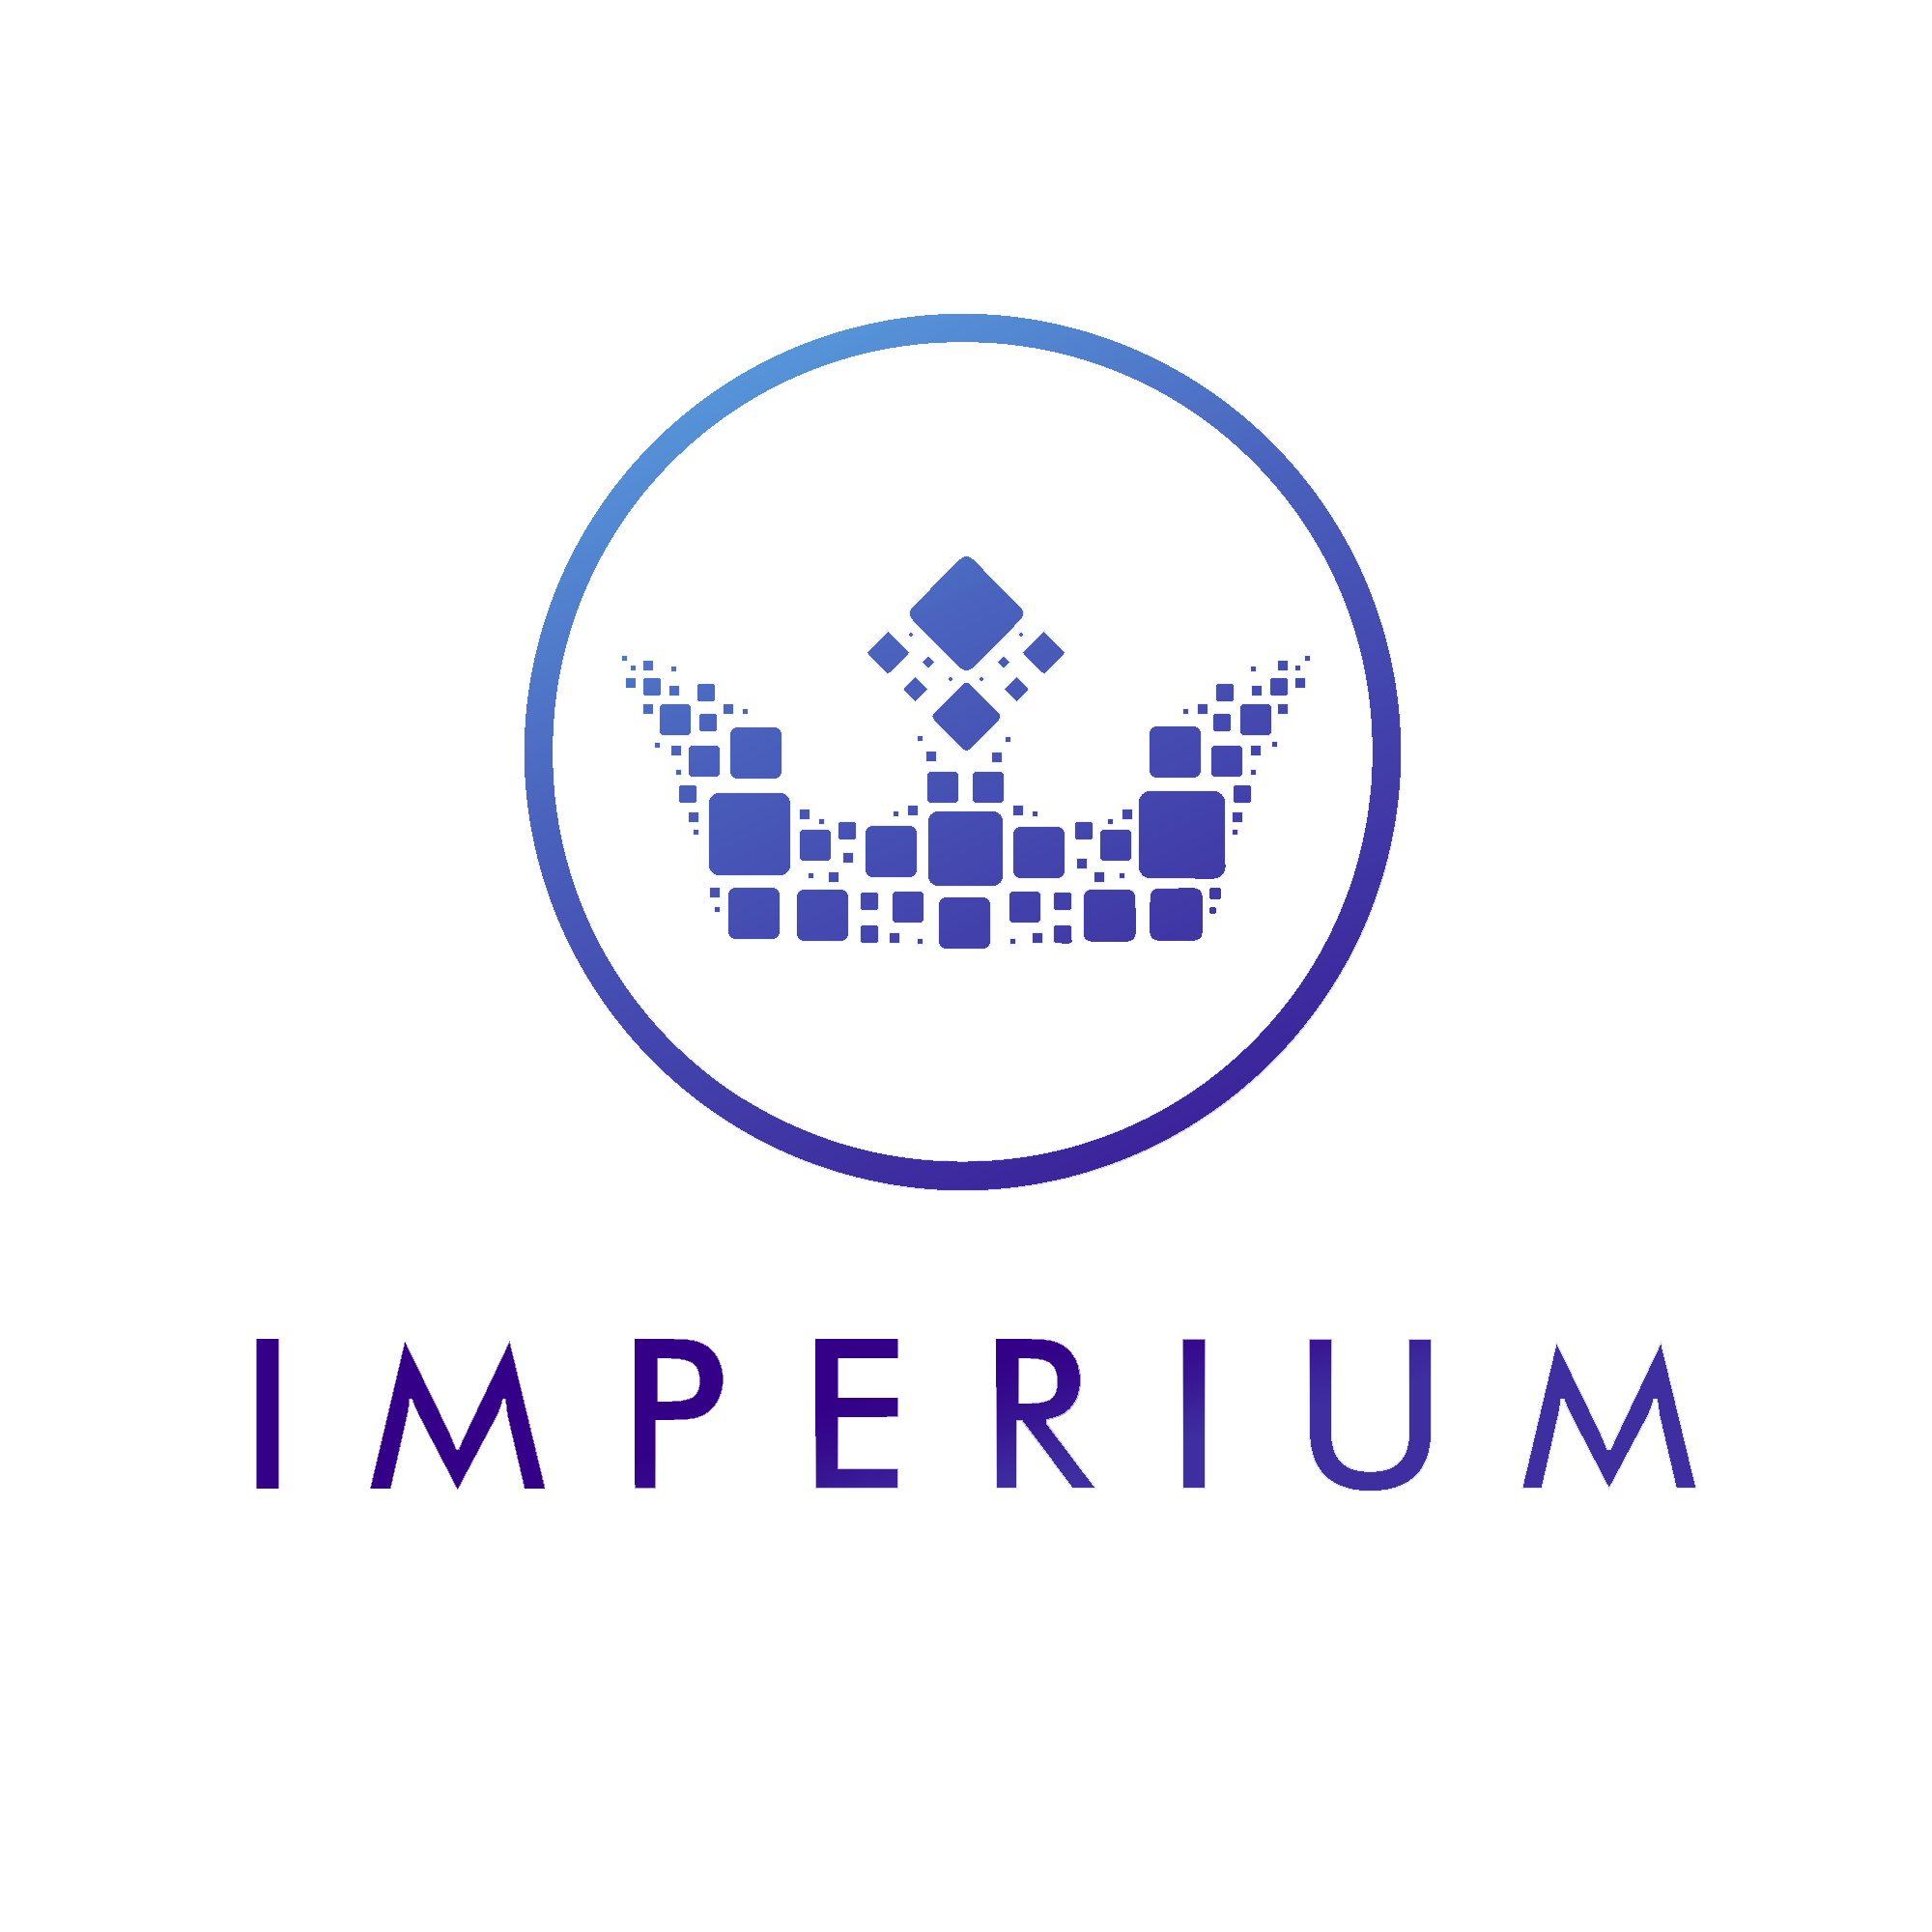 Imperium   Social (imperium_social)